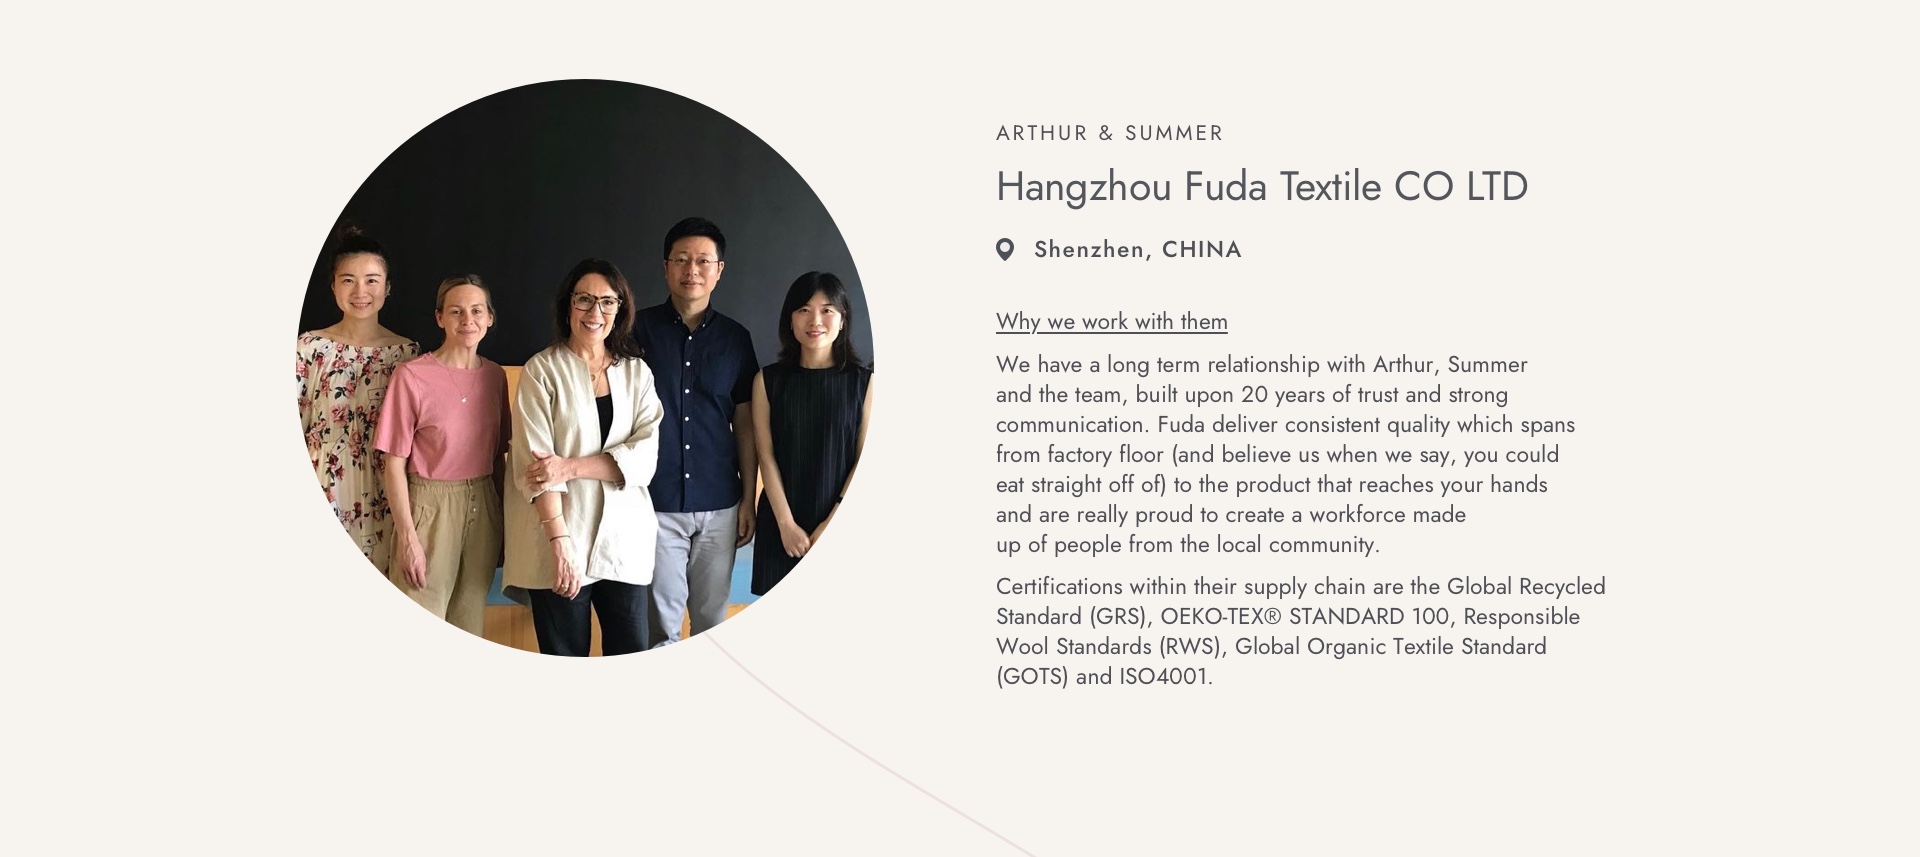 Hangzhou Fuda Textile CO LTD